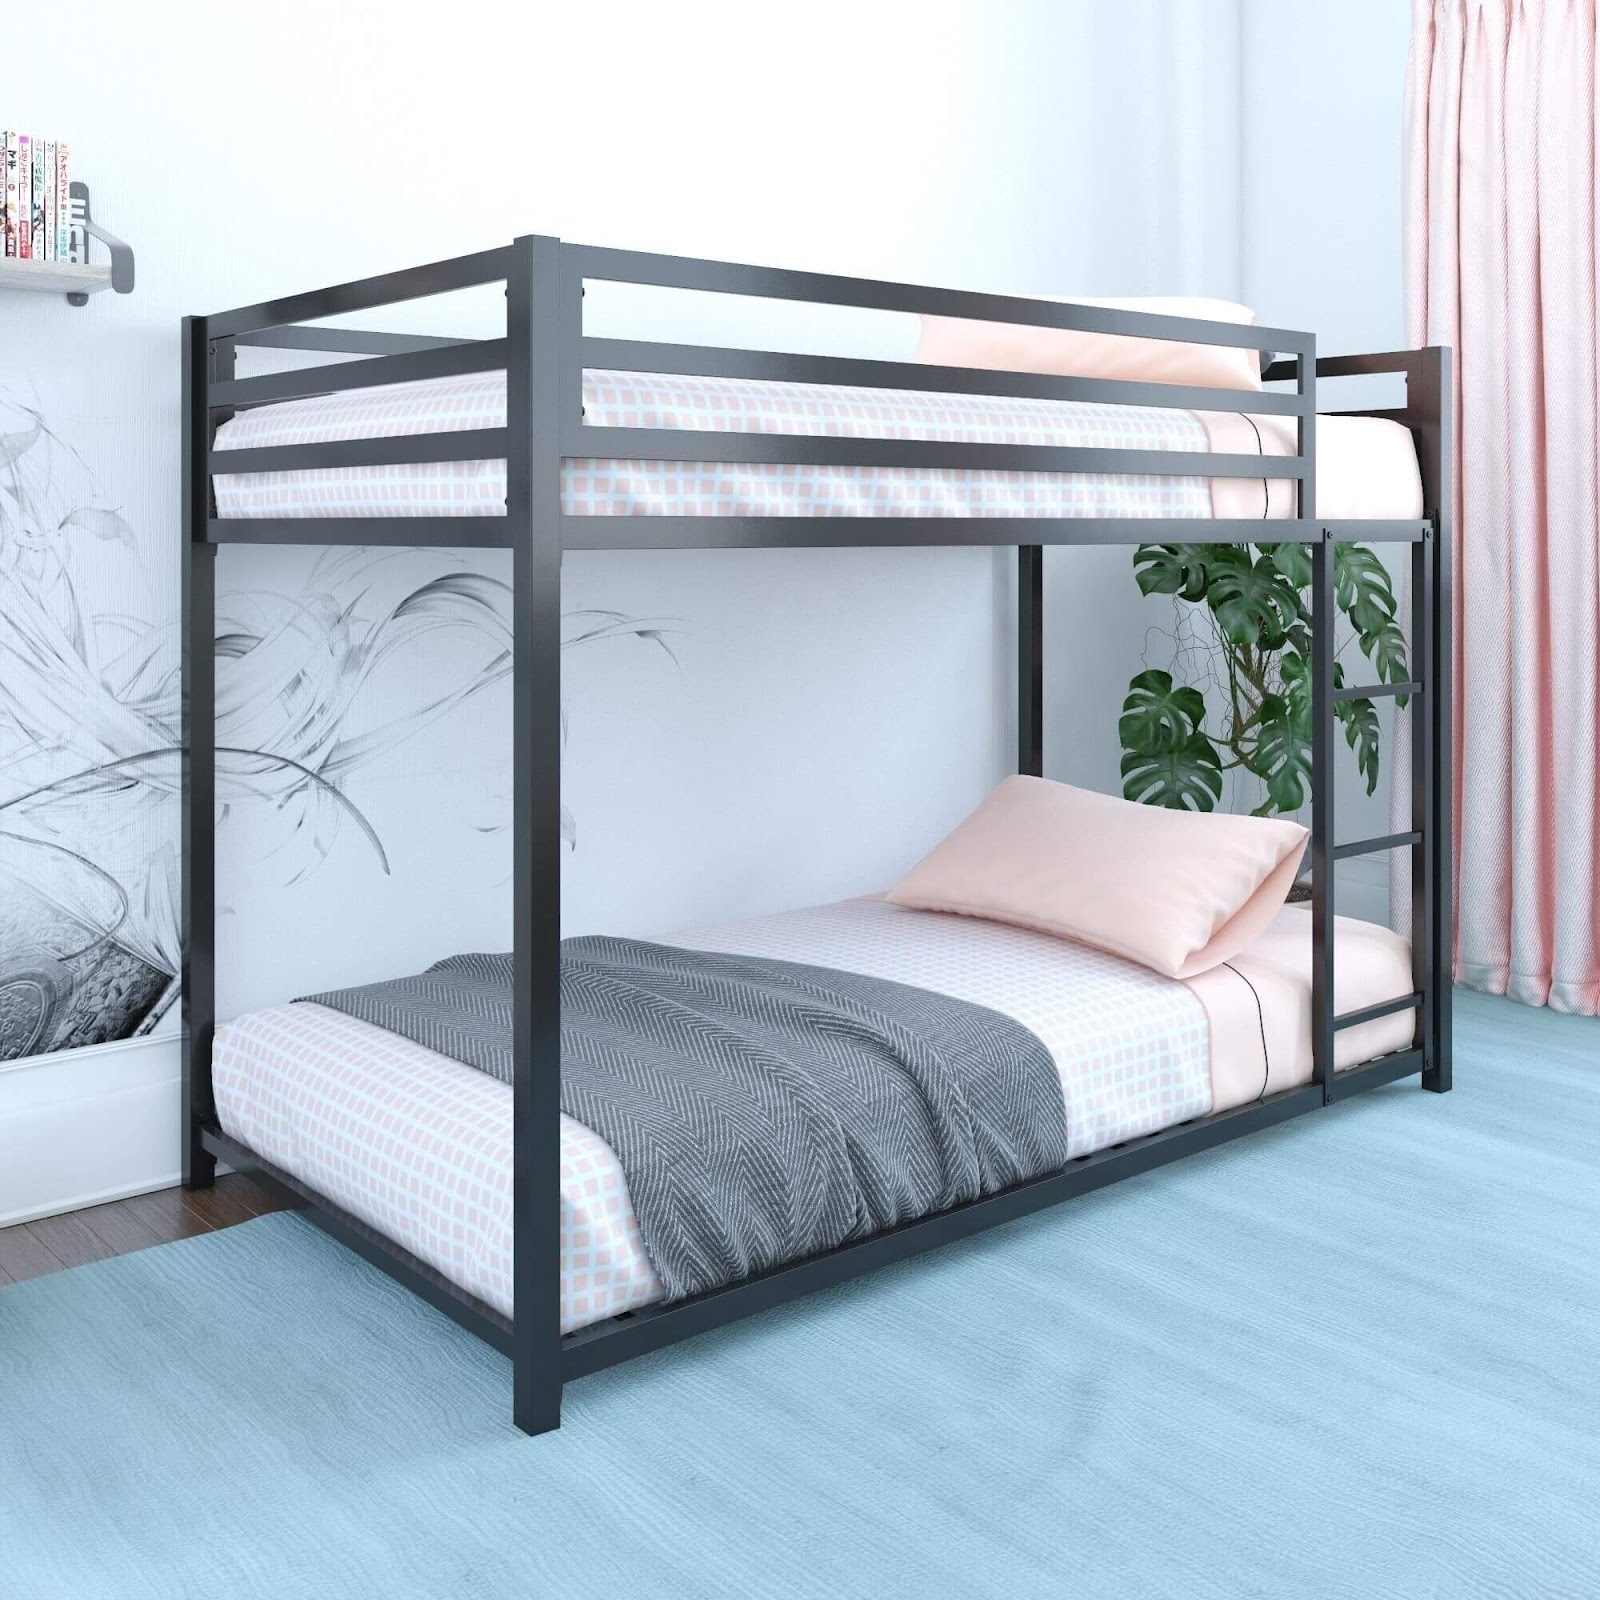 Mẫu giường tầng rẻ giá đẹp làm bằng sắt 5